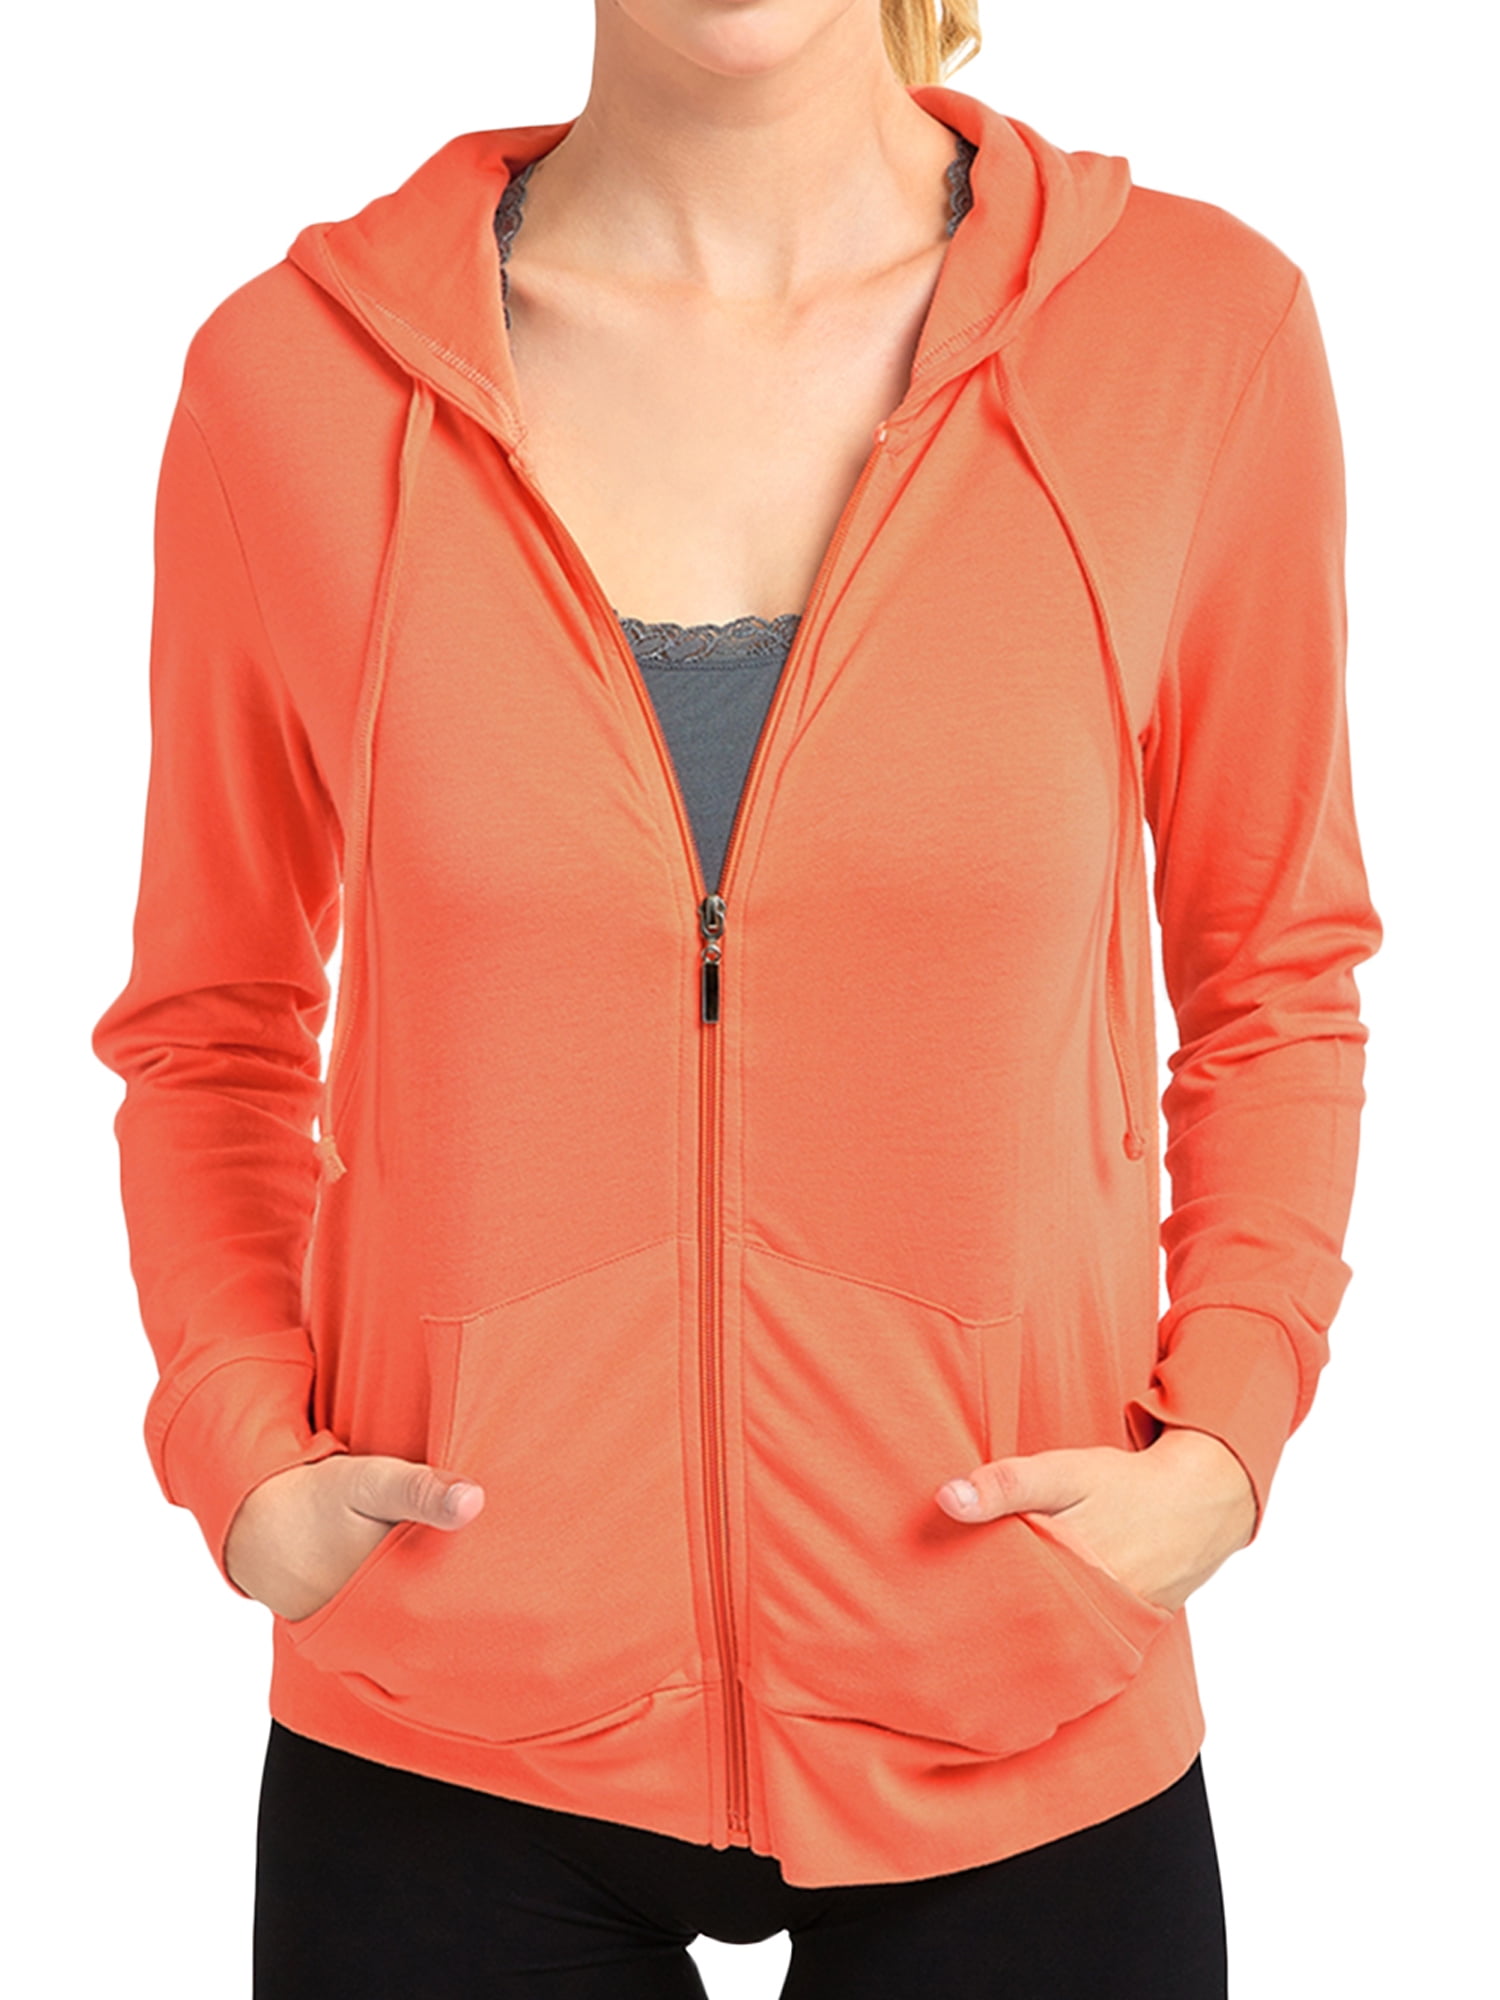 Women's Lightweight Cotton Blend Long Sleeve Zip Up Thin Hoodie Jacket -  Walmart.com